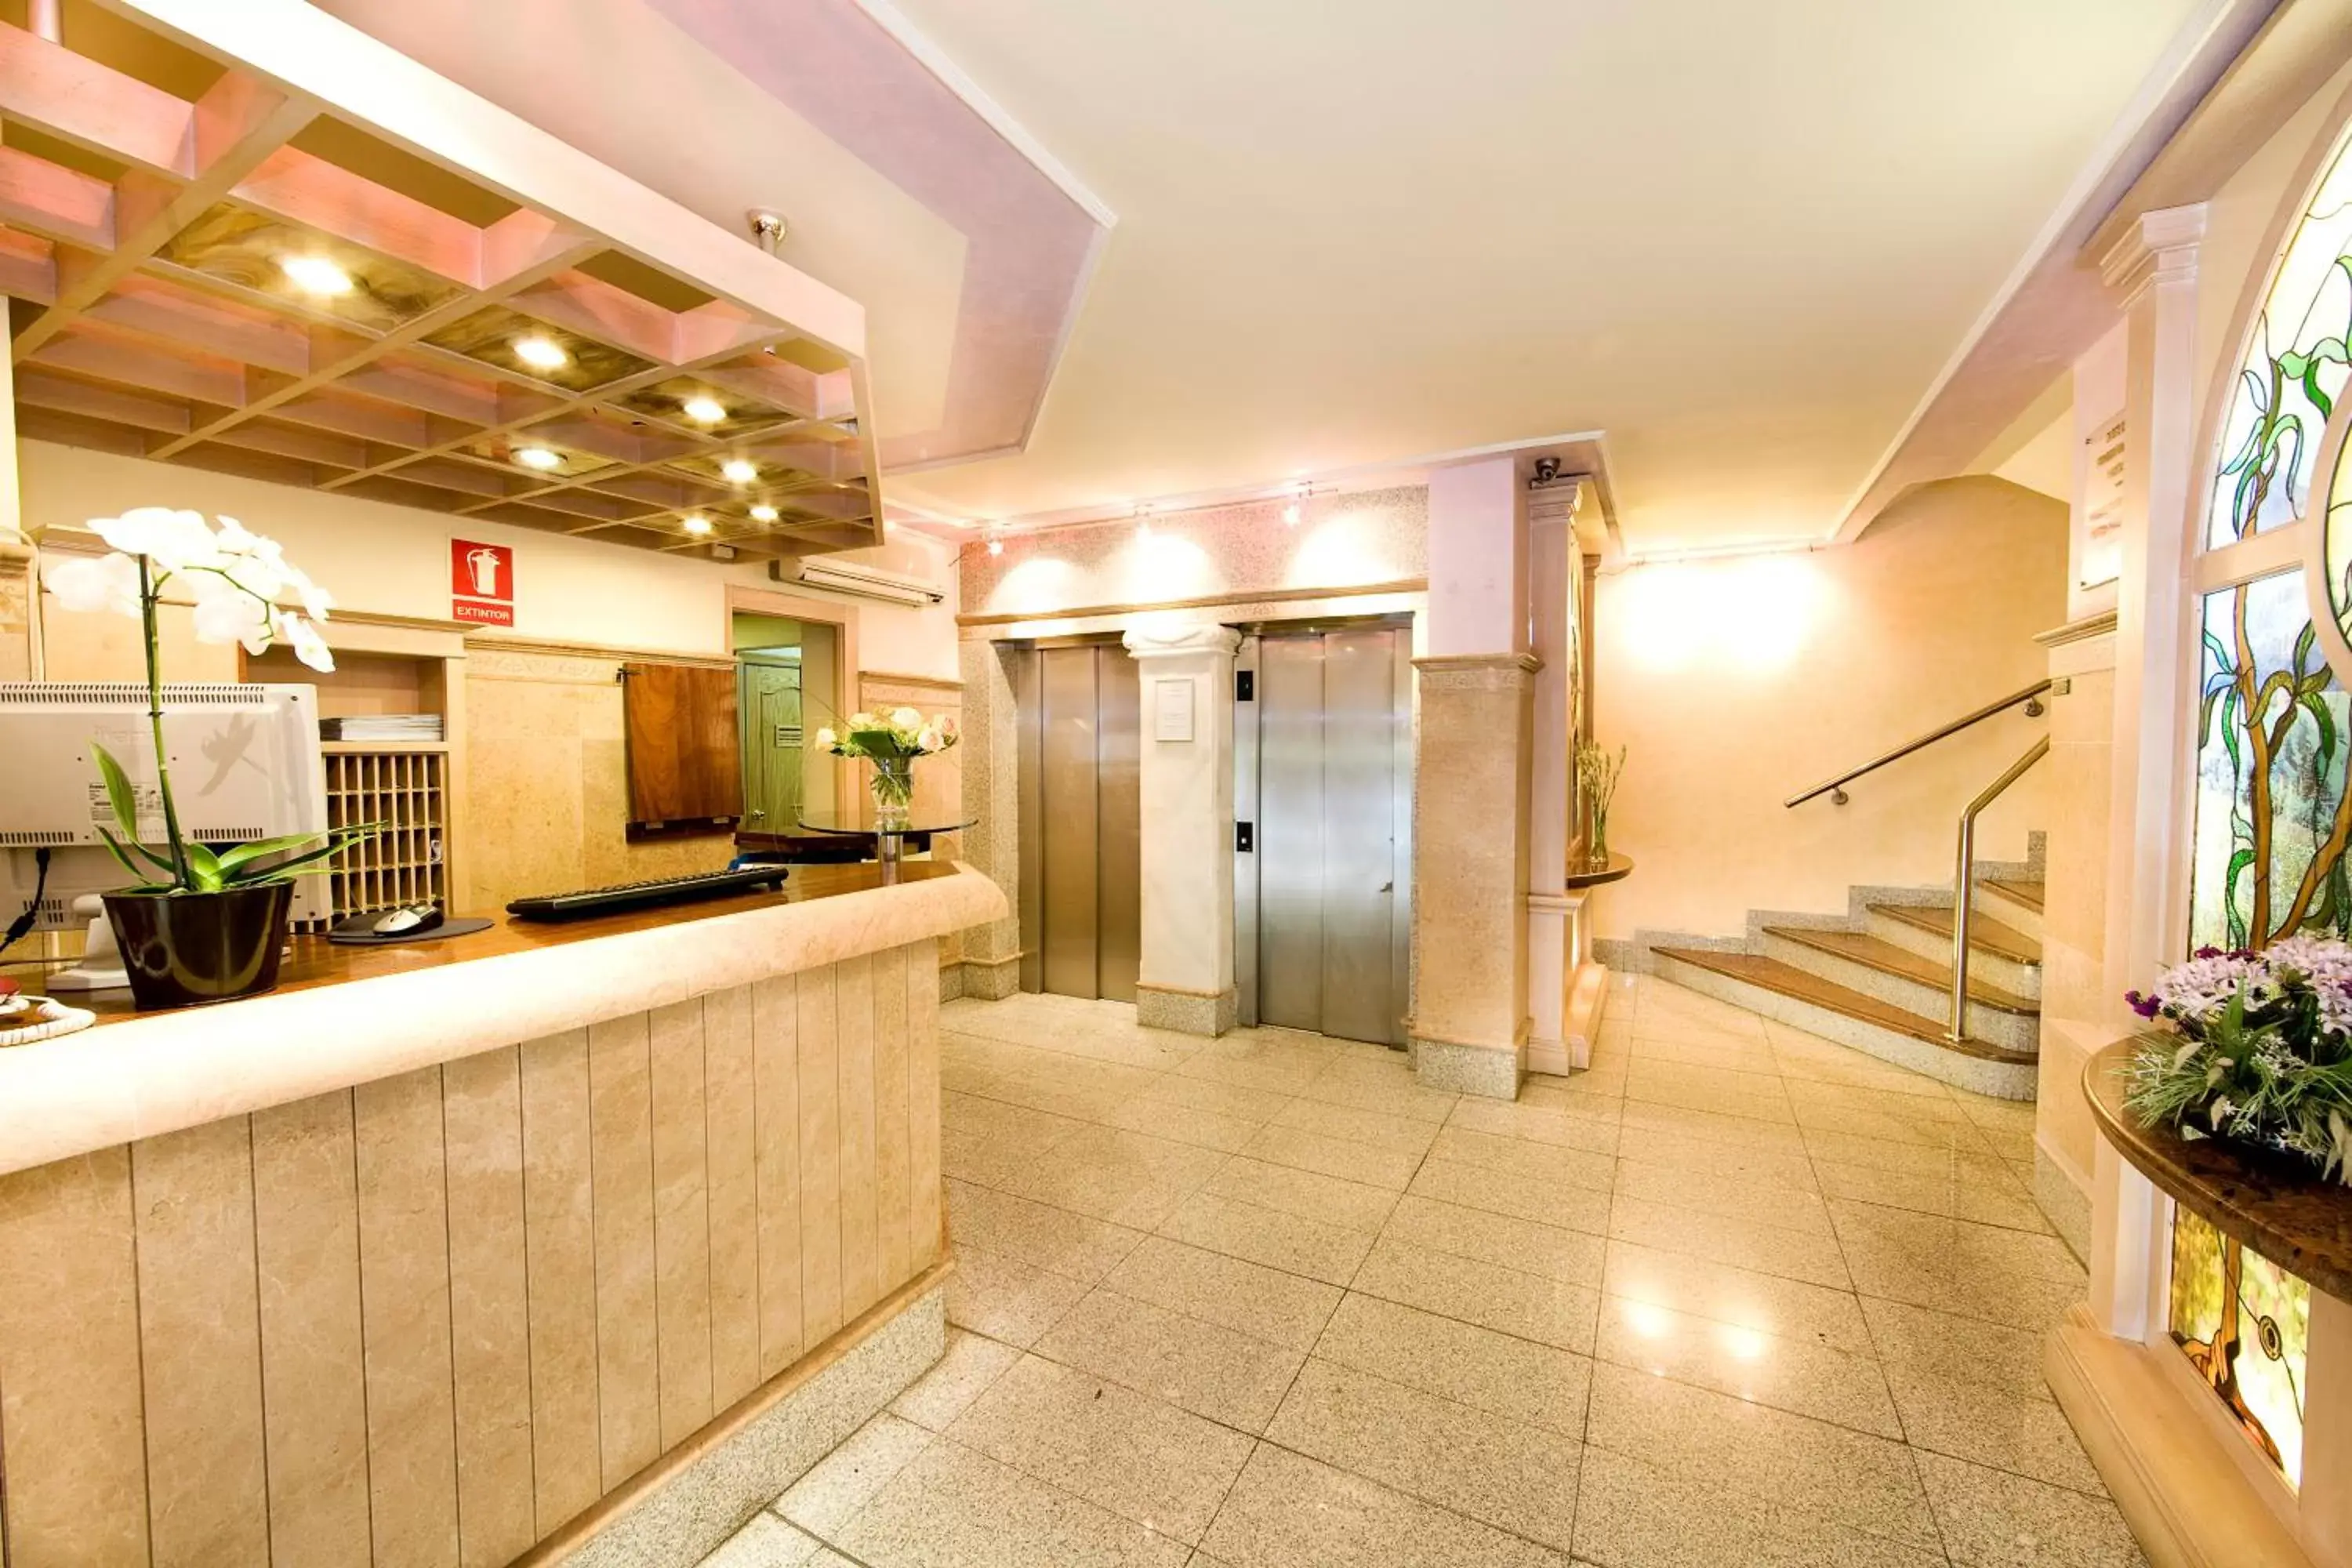 Lobby or reception, Lobby/Reception in Hotel Monarque El Rodeo